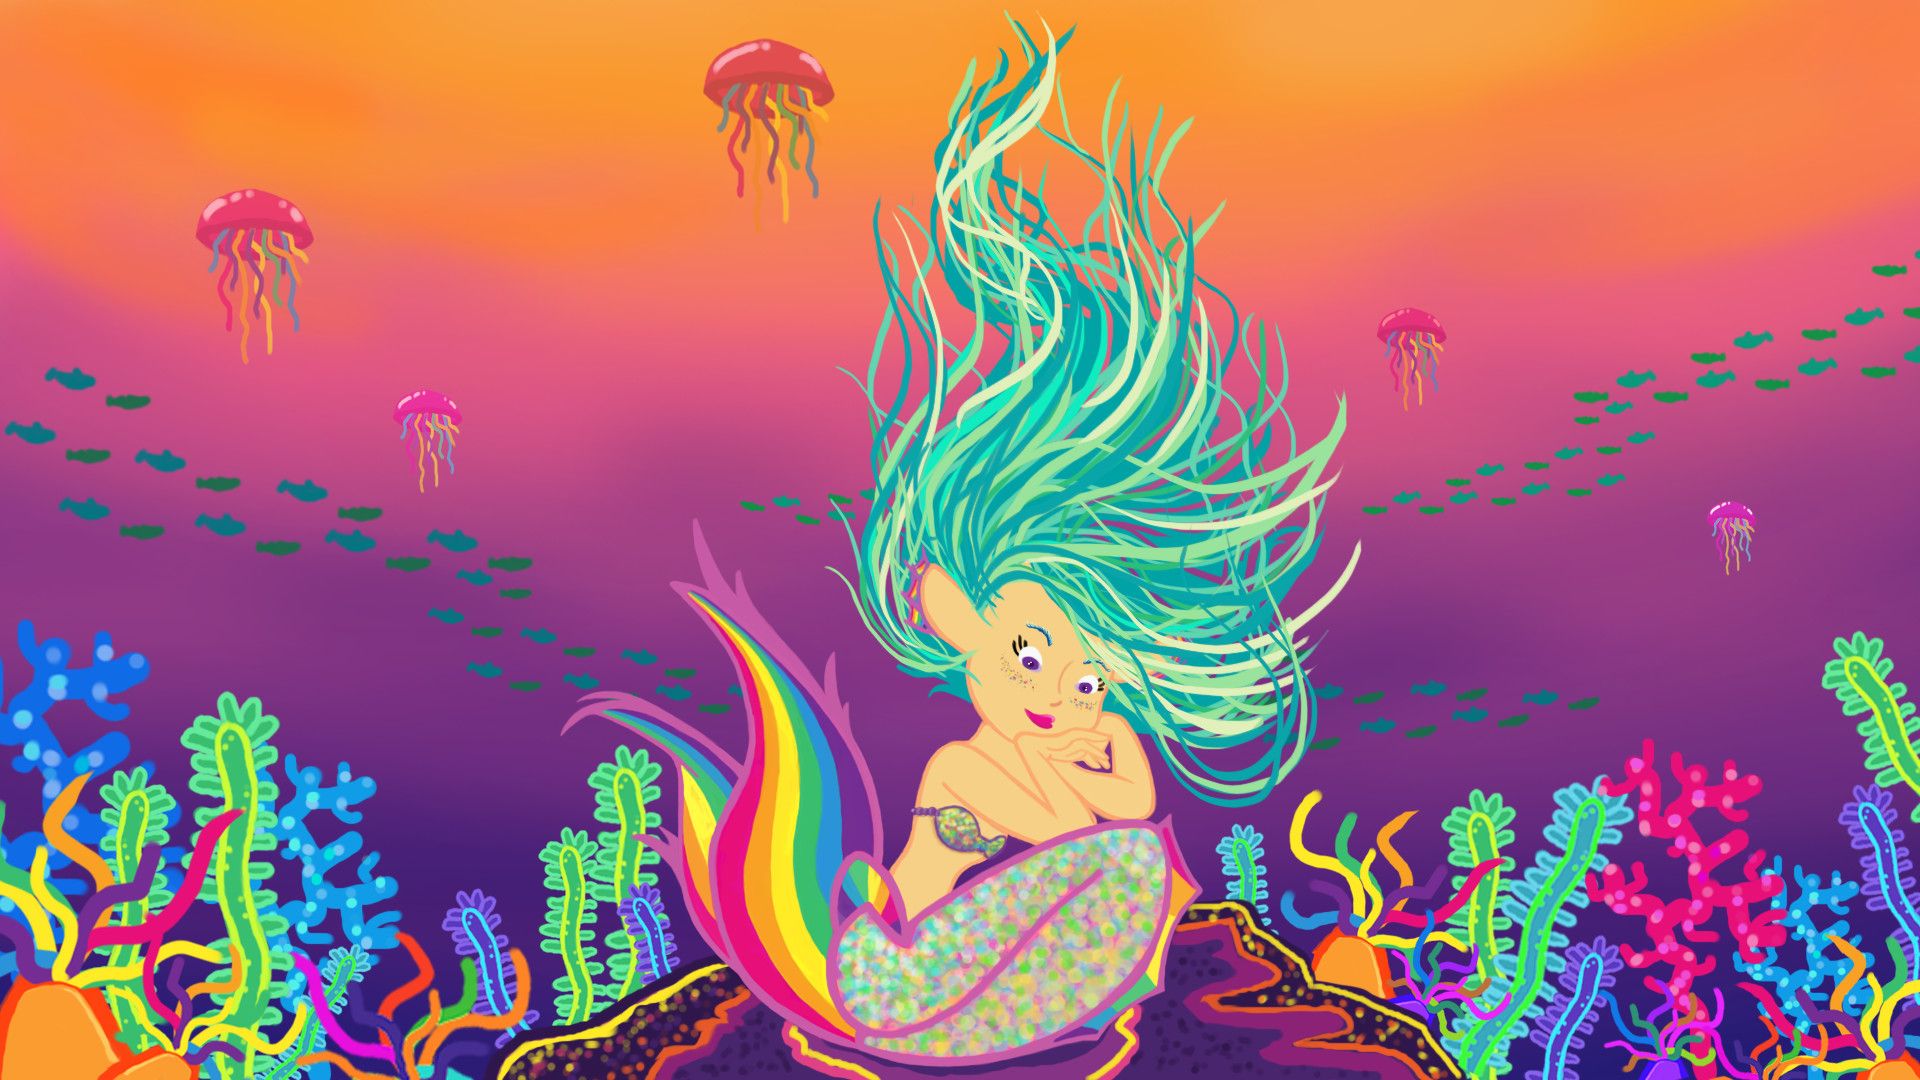 Mermaid in Lisa Frank Style, Meryl Anderson